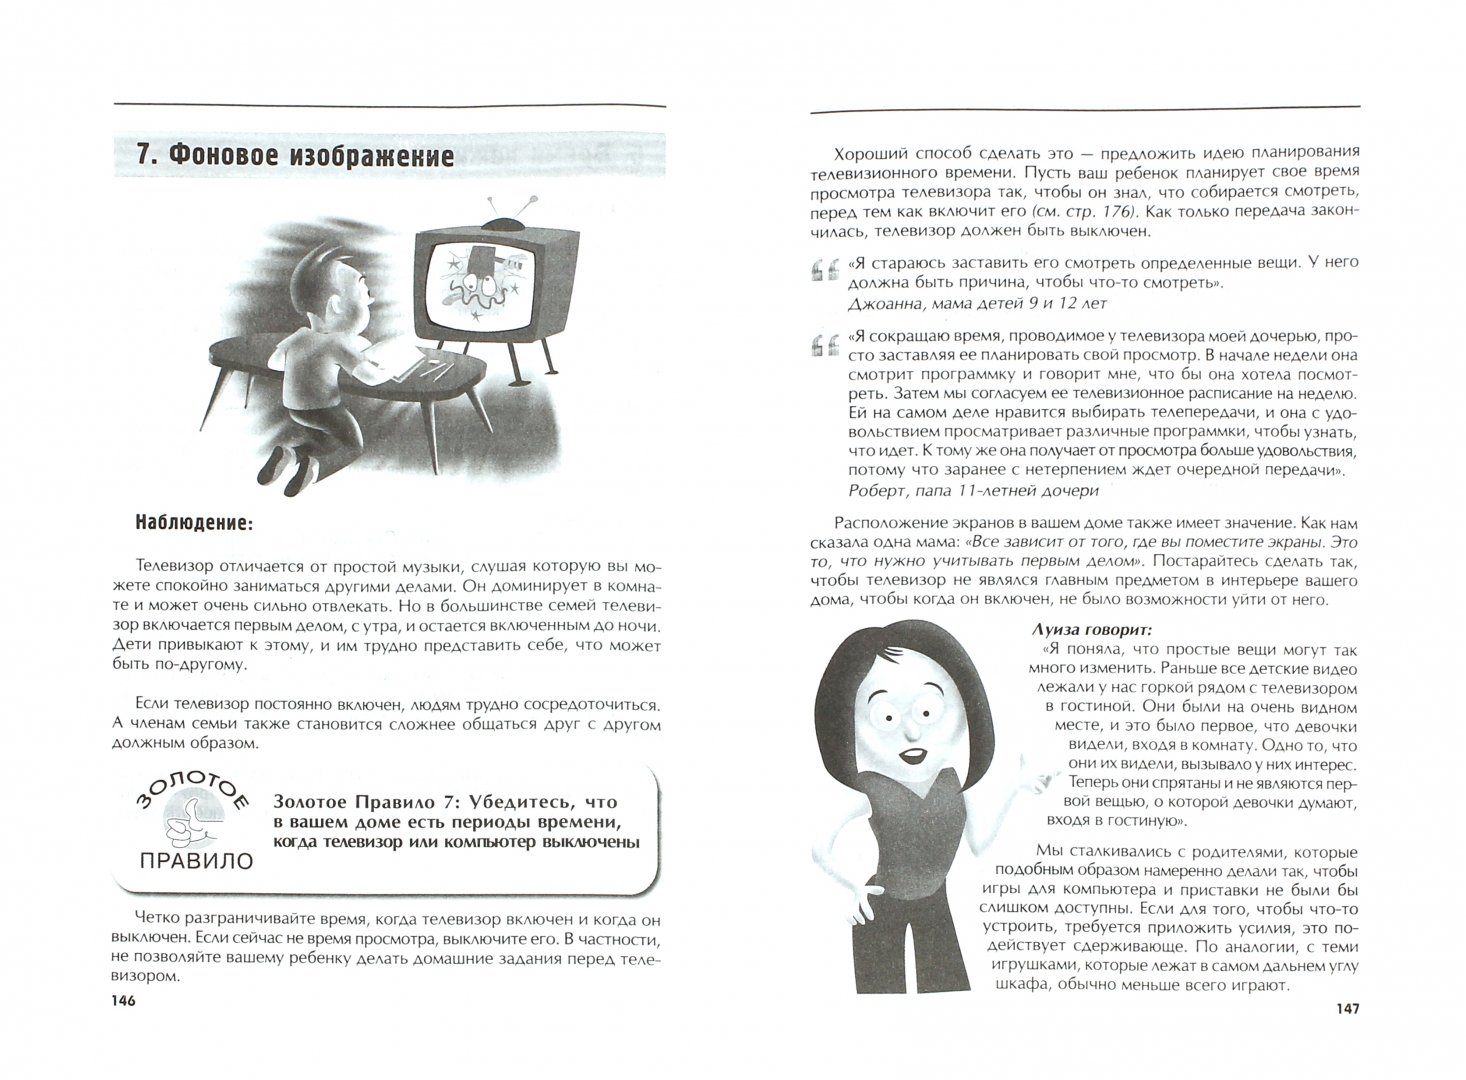 Иллюстрация 1 из 12 для Медиадиета для детей. Руководство для родителей: как преодолеть зависимость от телевизора - Оранж, О'Флинн | Лабиринт - книги. Источник: Лабиринт